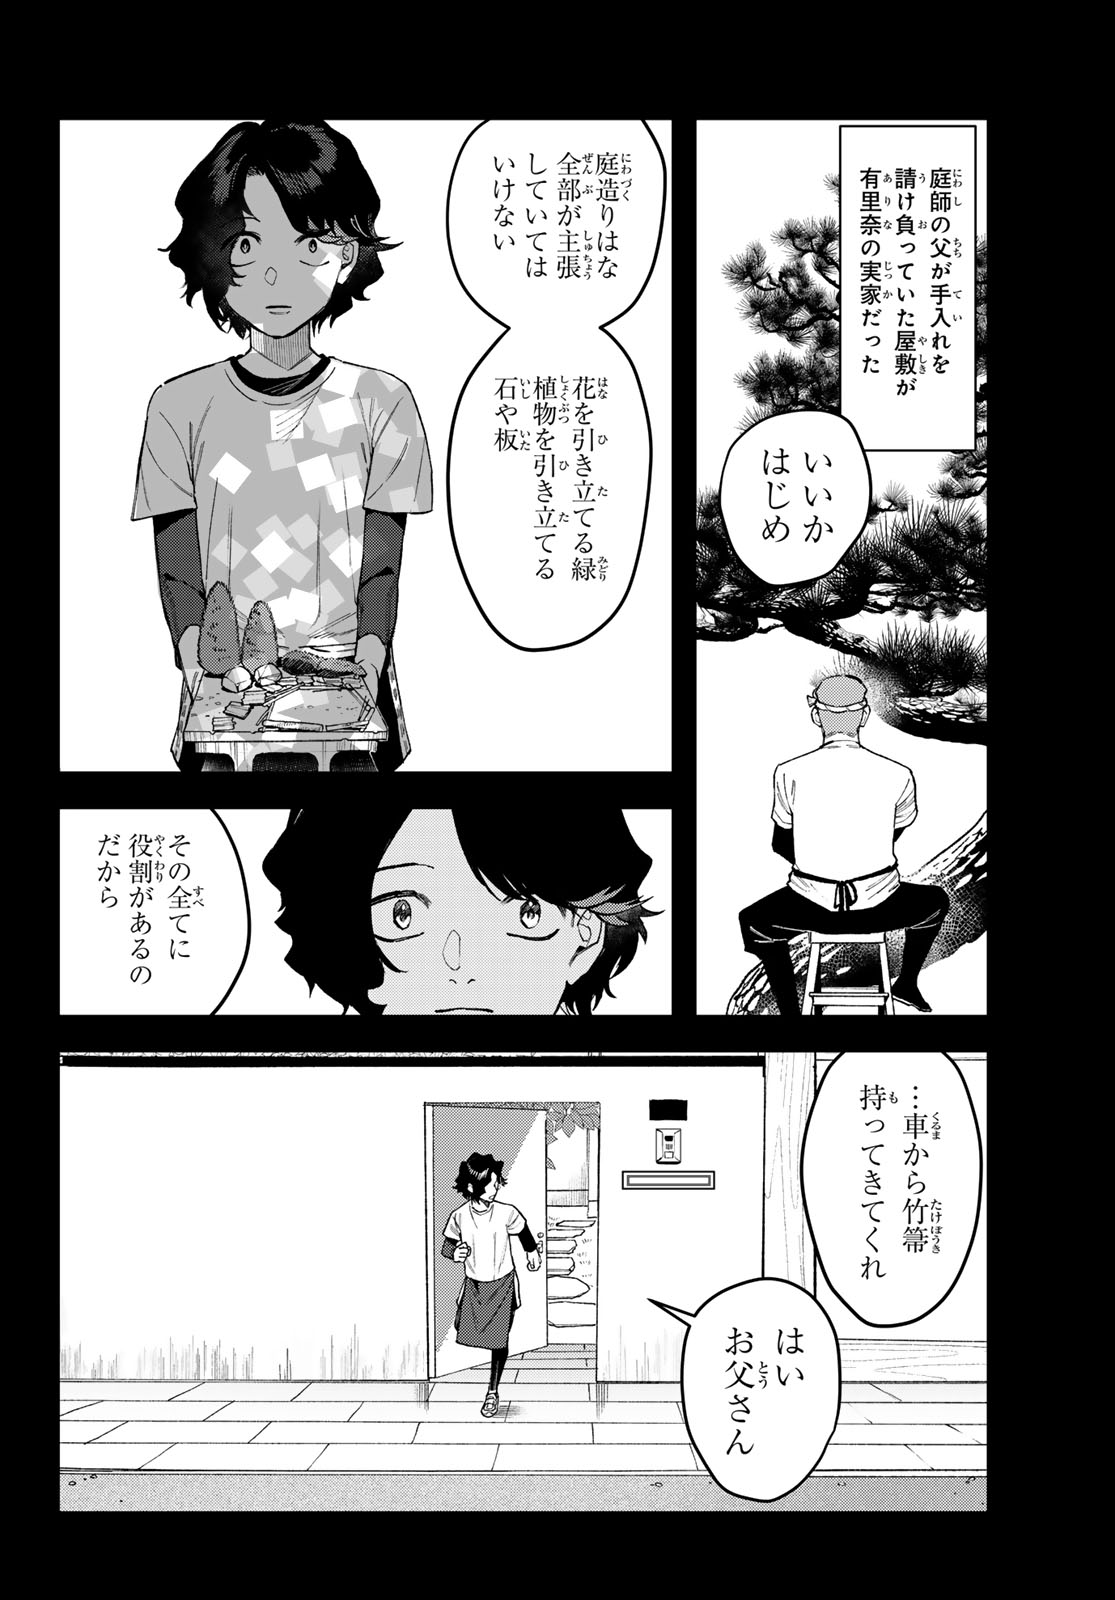 Bless (SONOYAMA Yukino) - Chapter 16 - Page 2